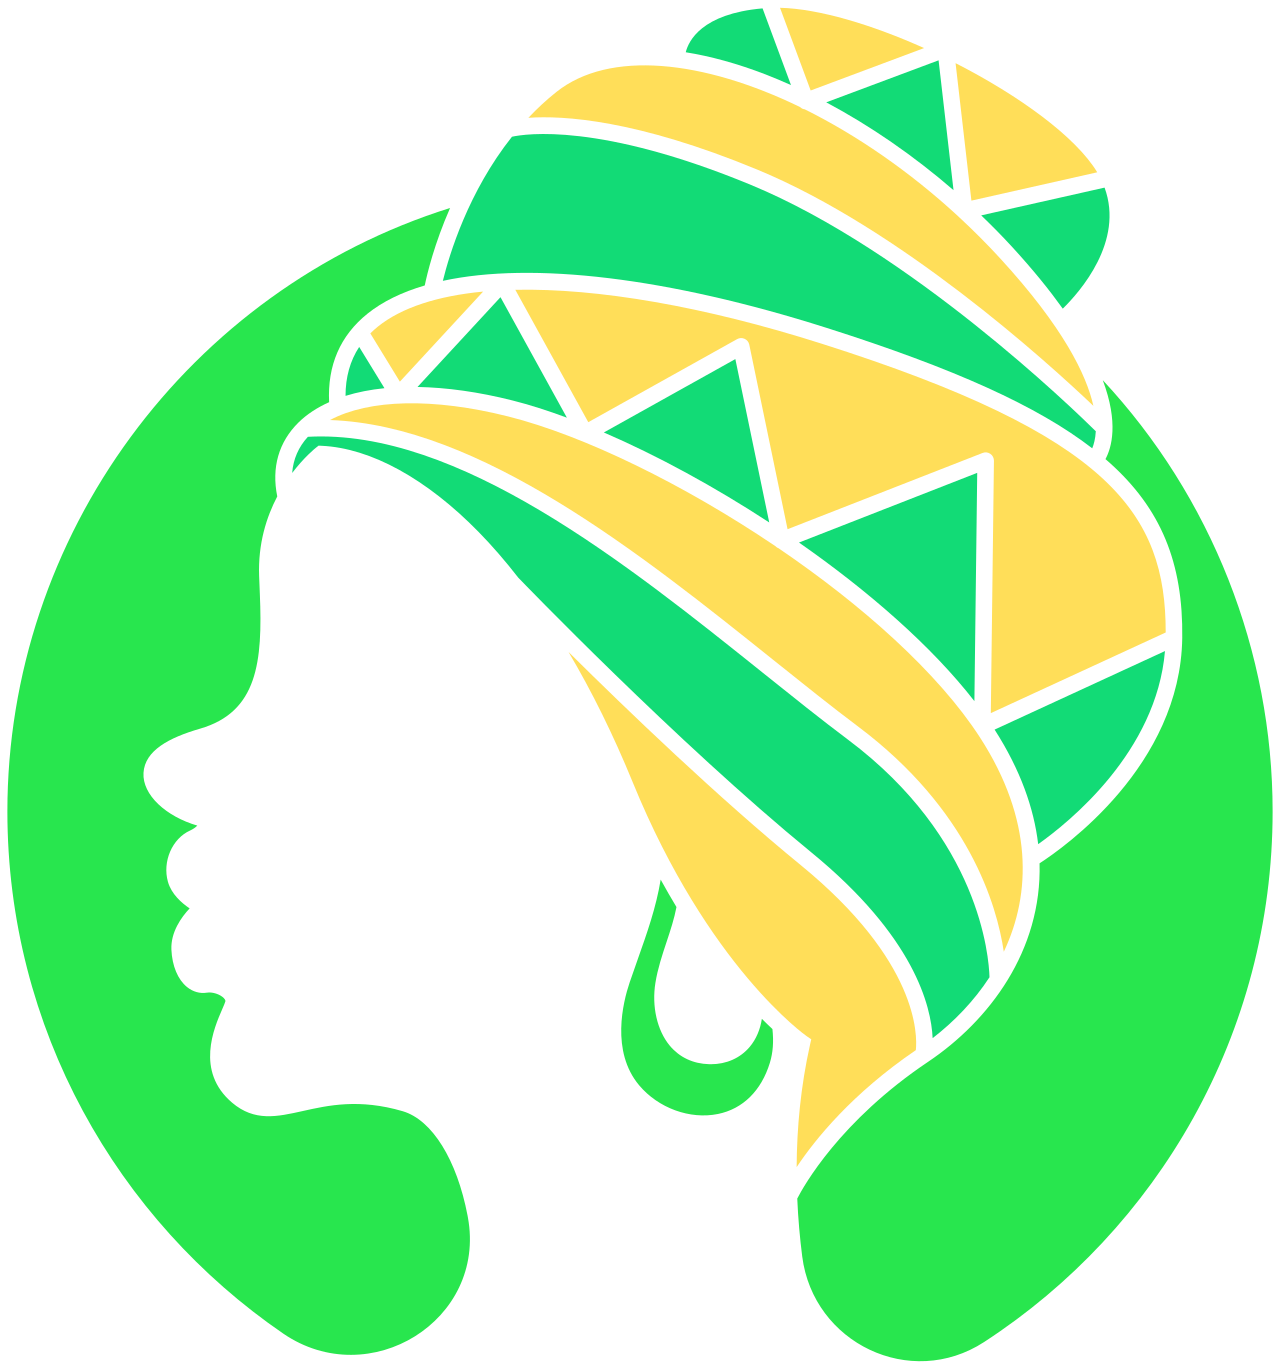 Zulu's 's logo